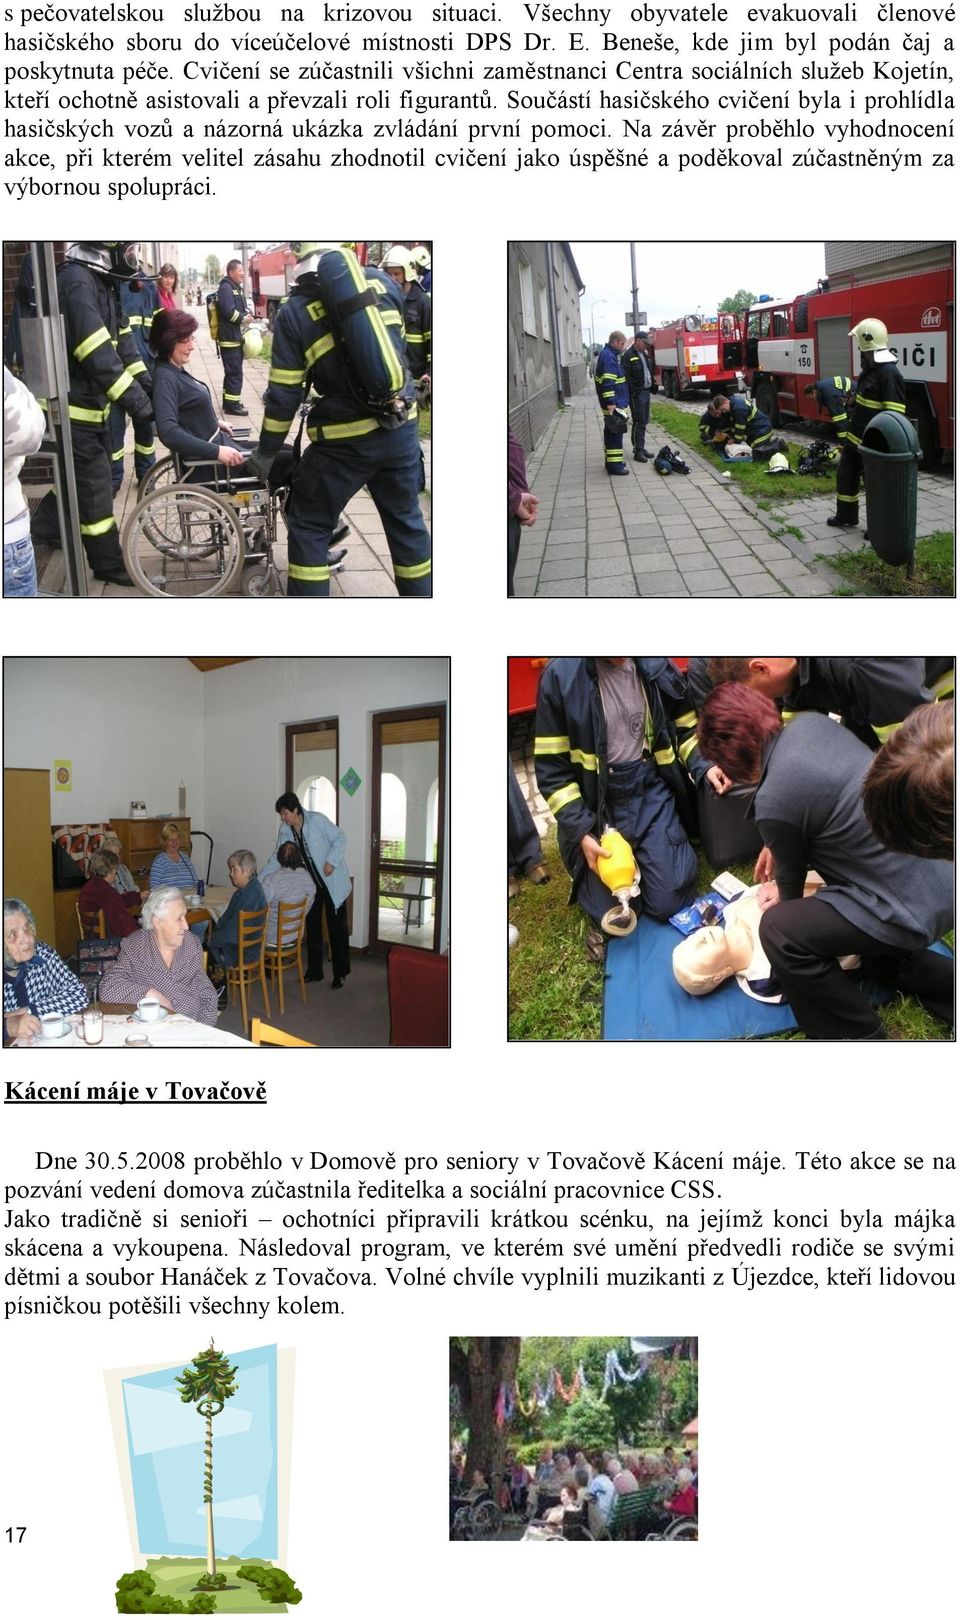 Součástí hasičského cvičení byla i prohlídla hasičských vozů a názorná ukázka zvládání první pomoci.